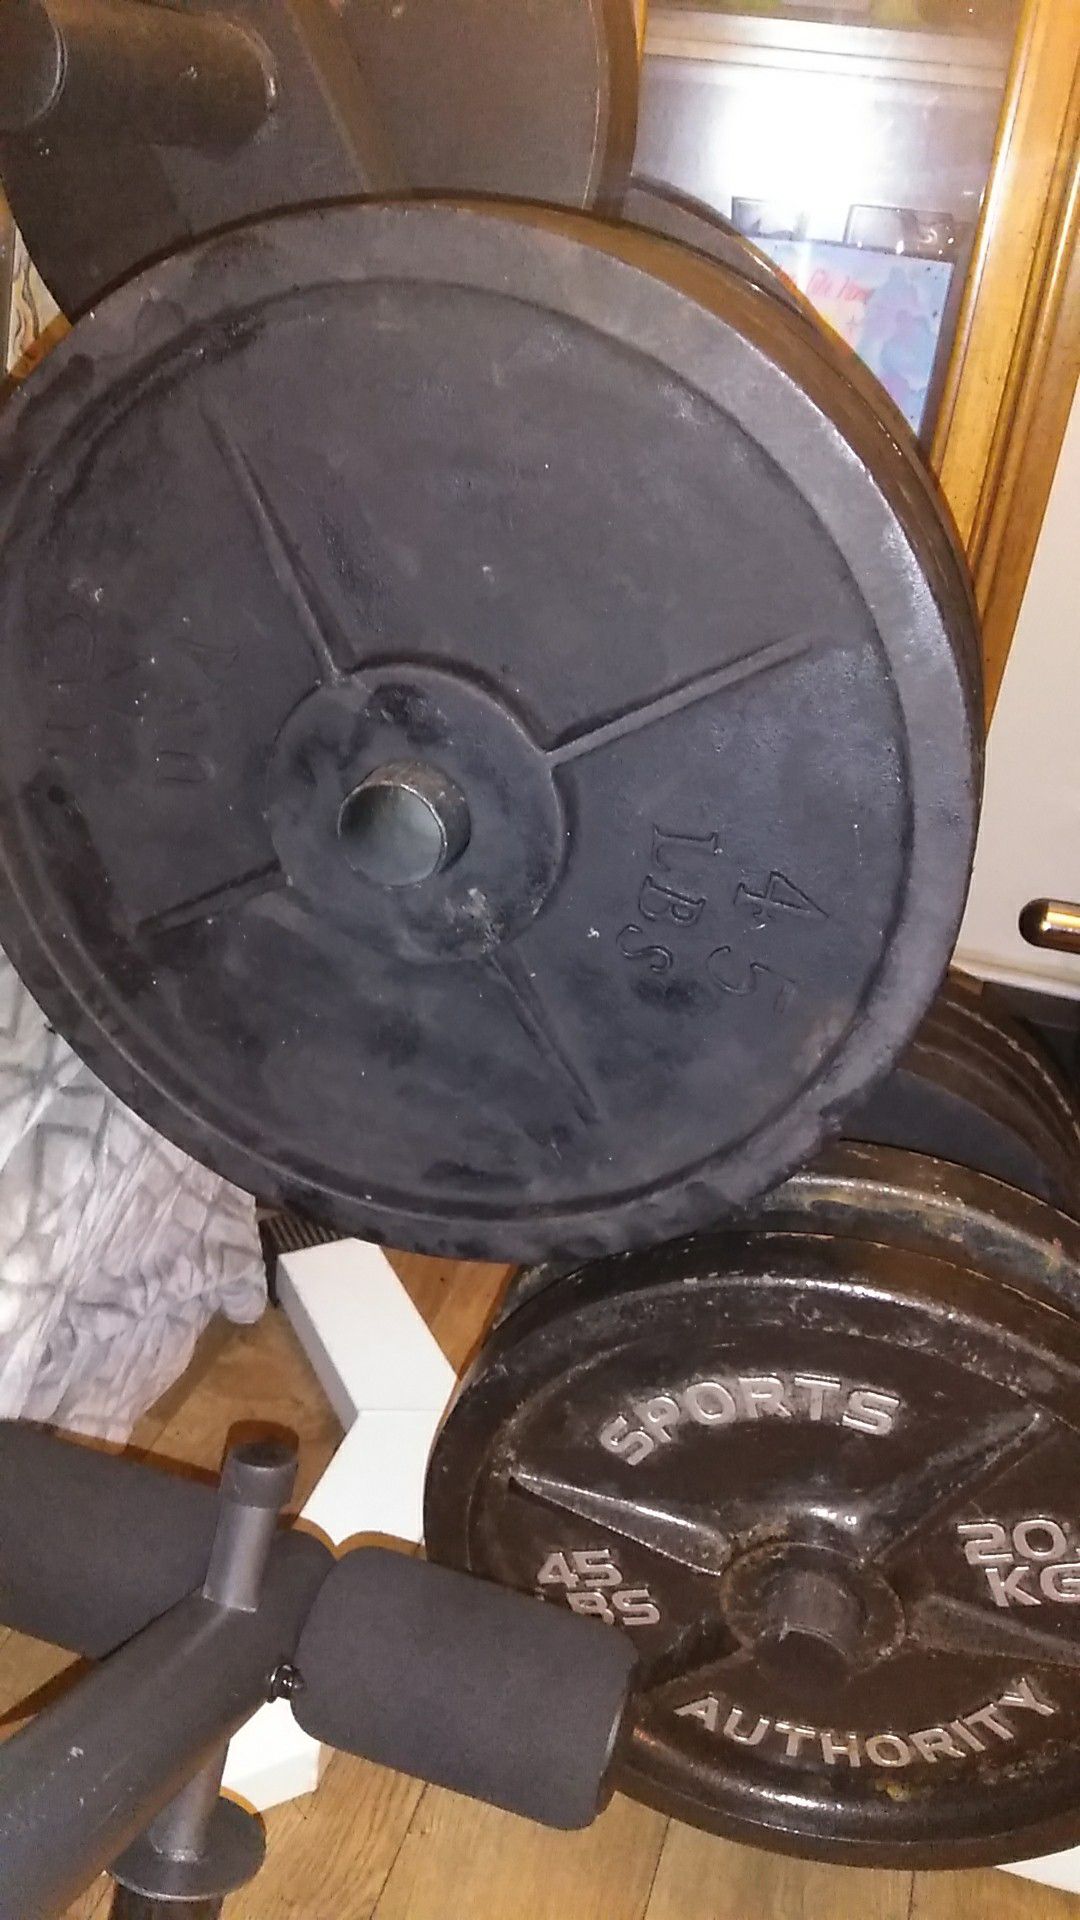 Vintage weight set